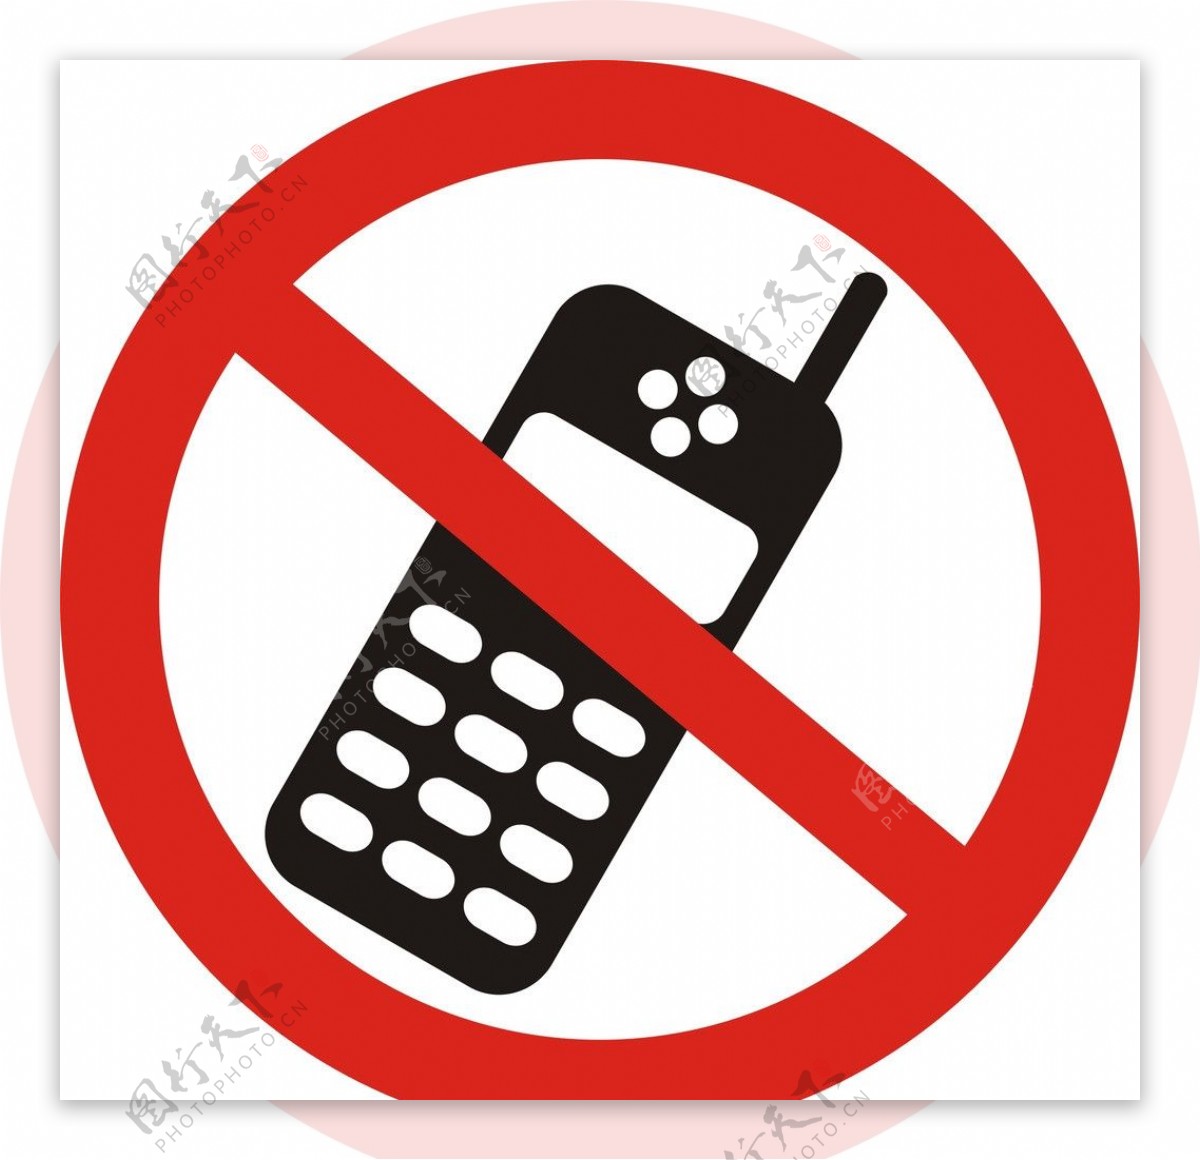 禁止使用手机标志图片